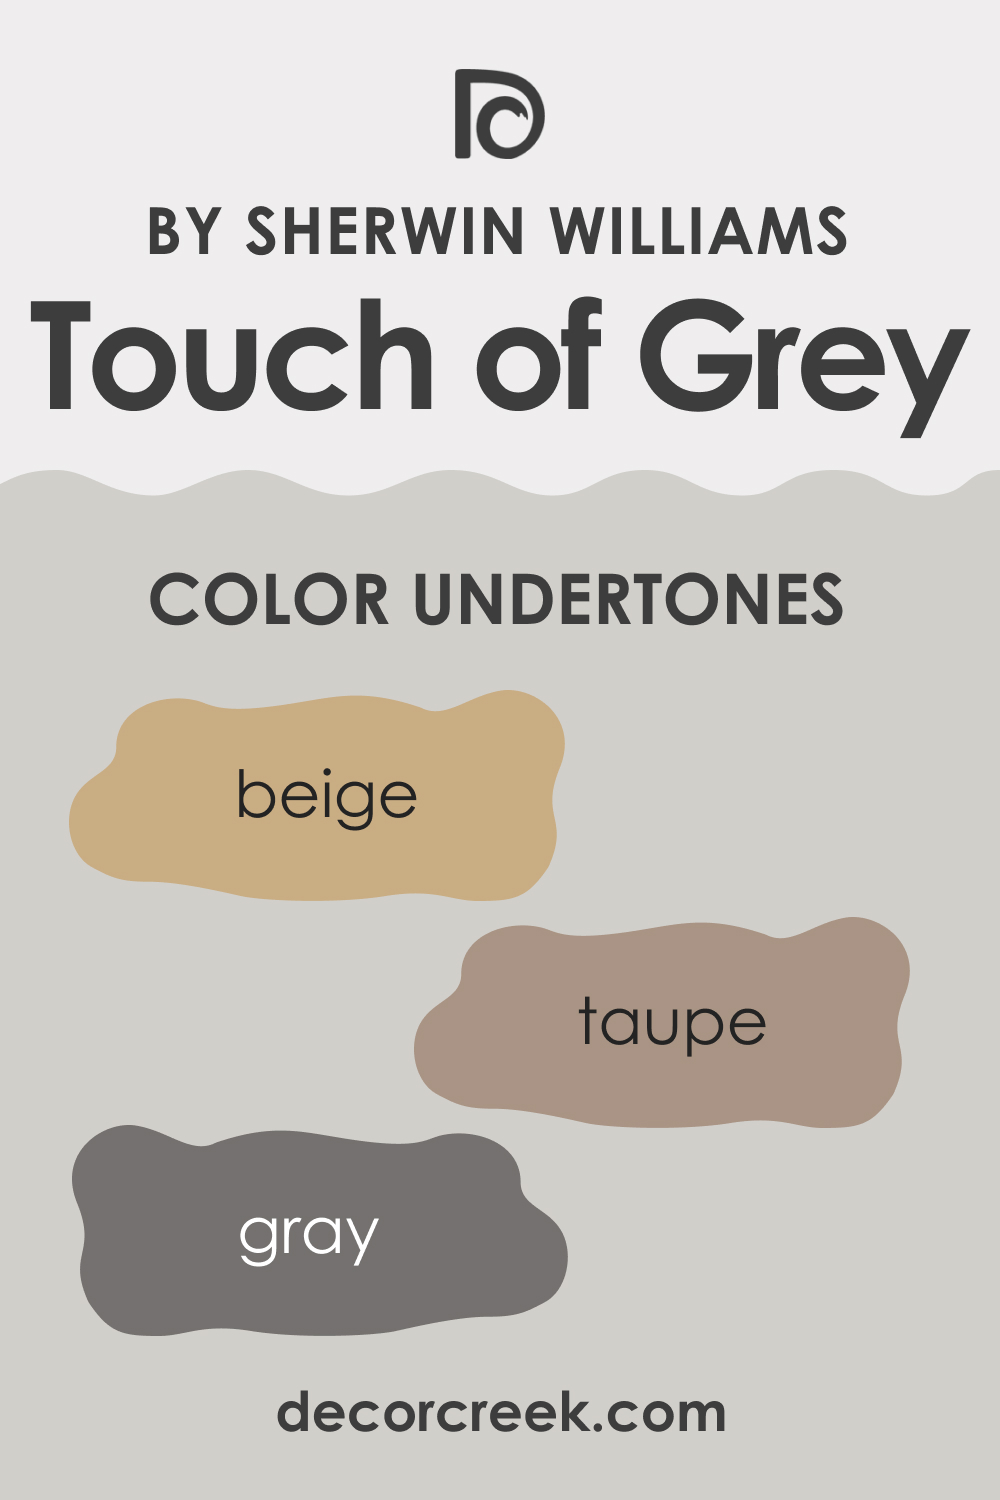 Undertones of SW 9549 Touch of Grey